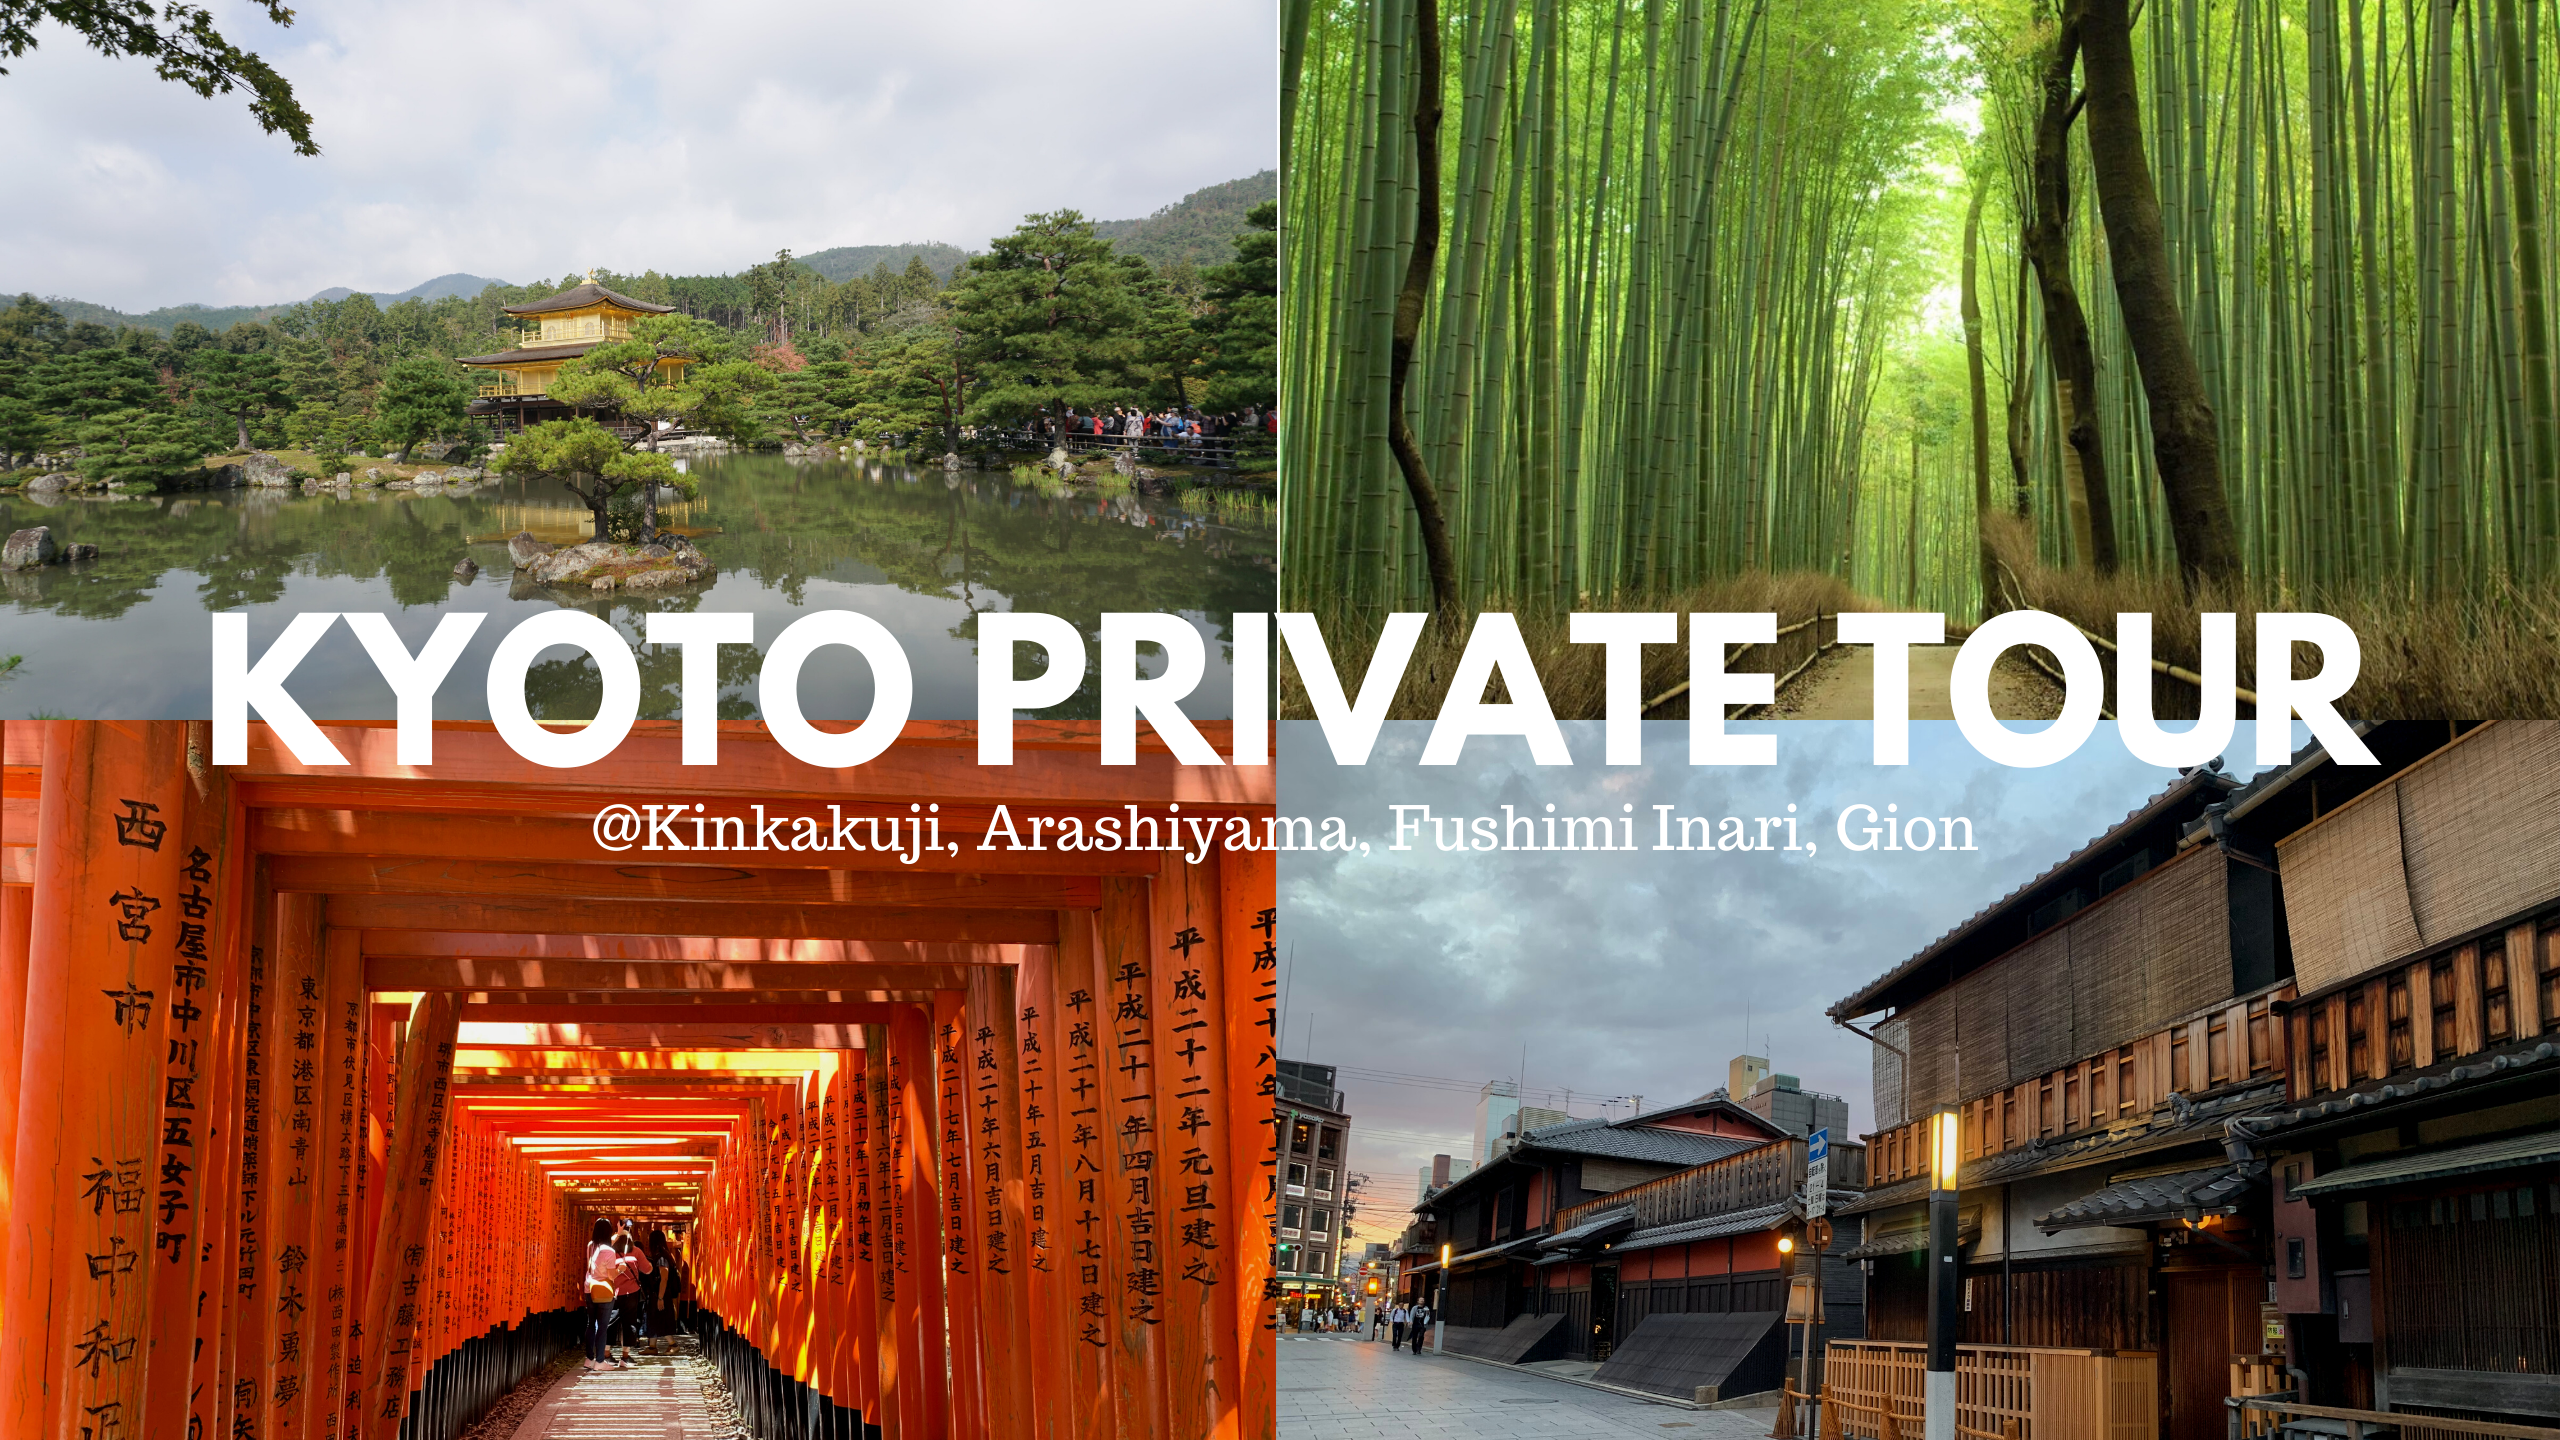 Kyoto Private Tour